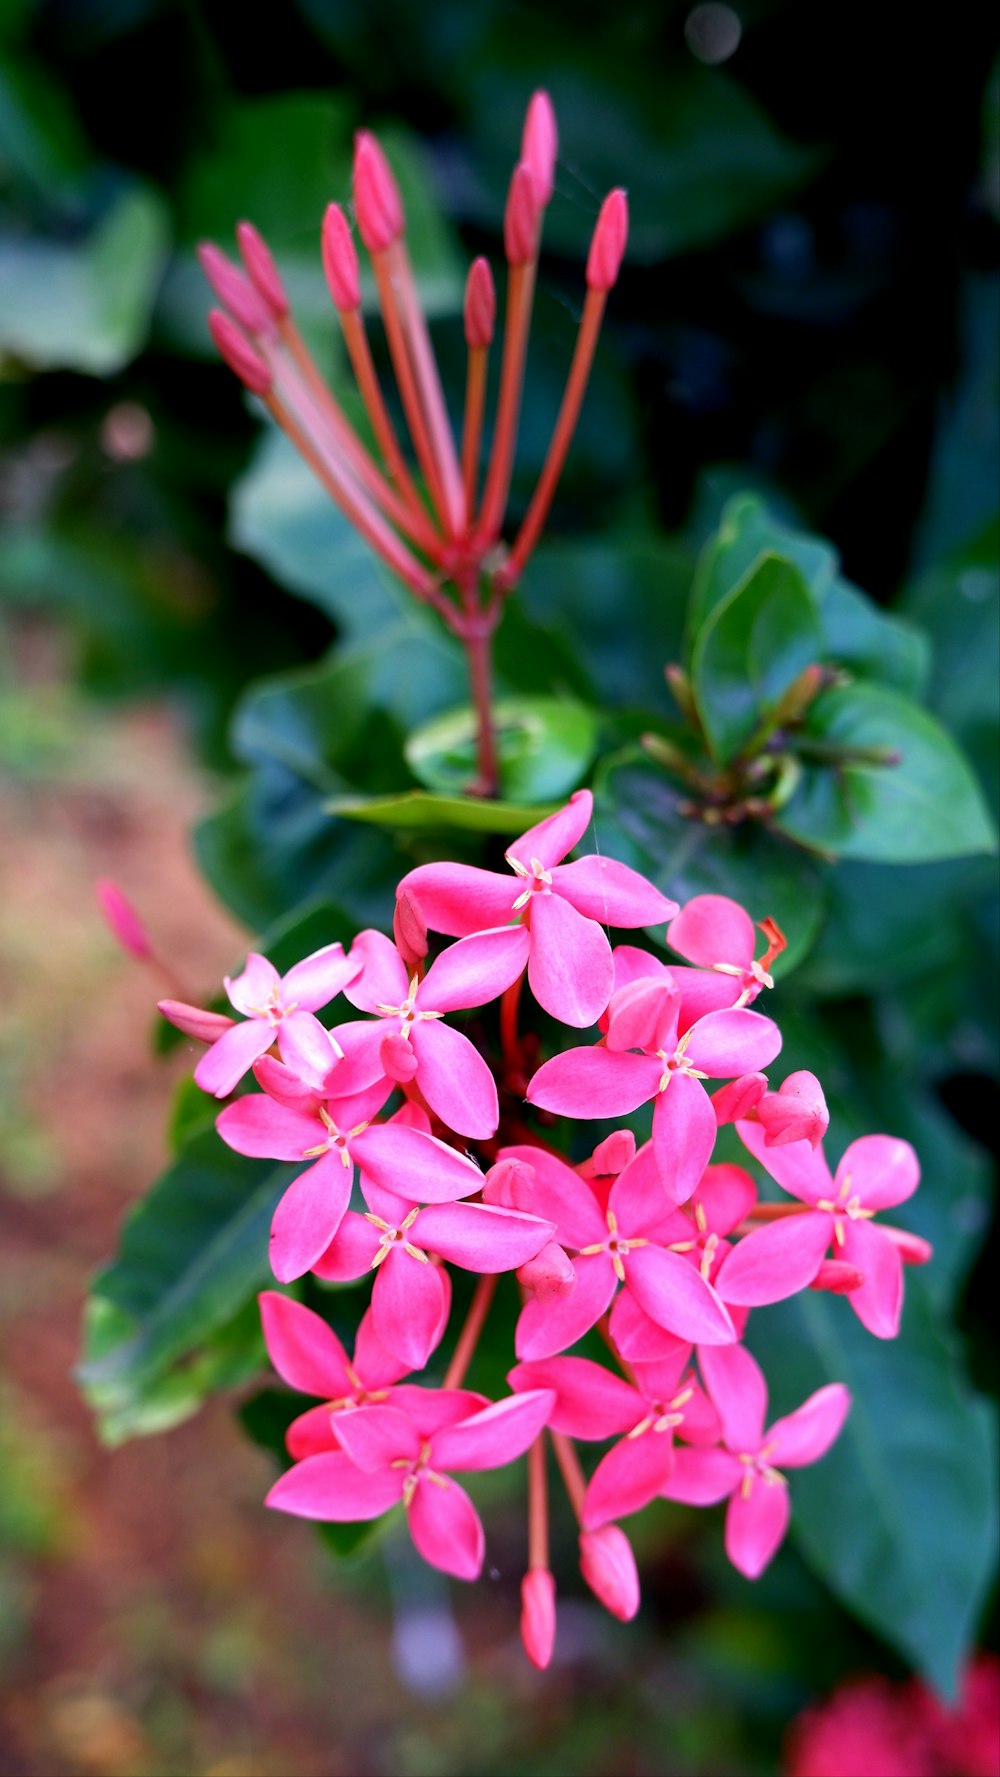 녹색 잎이 있는 분홍색 꽃의 클로즈업